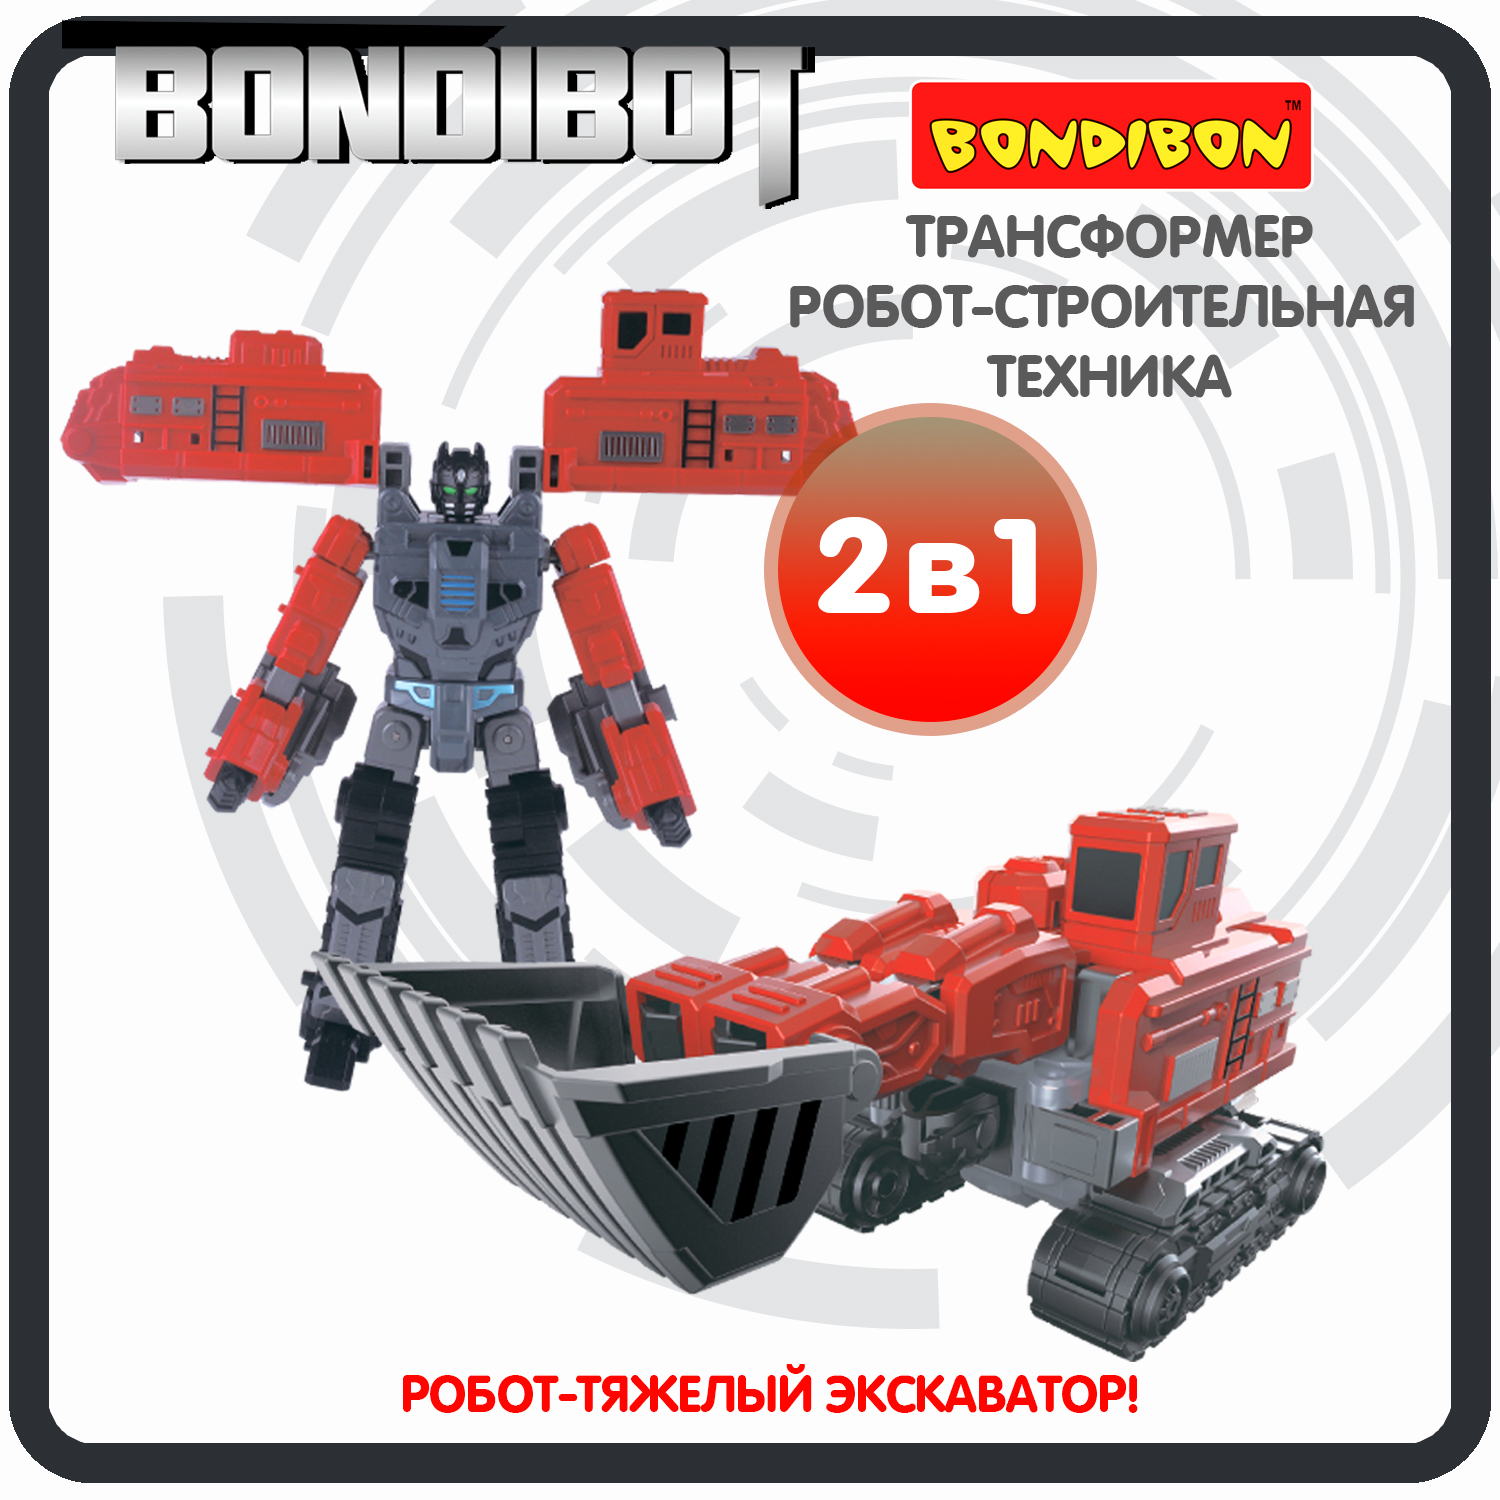 Трансформер робот-строительная техника, 2в1 BONDIBOT Bondibon, тяжёлый экскаватор / ВВ6057 трансформер строительная техника 2в1 bondibot bondibon экскаватор погрузчик вв6051